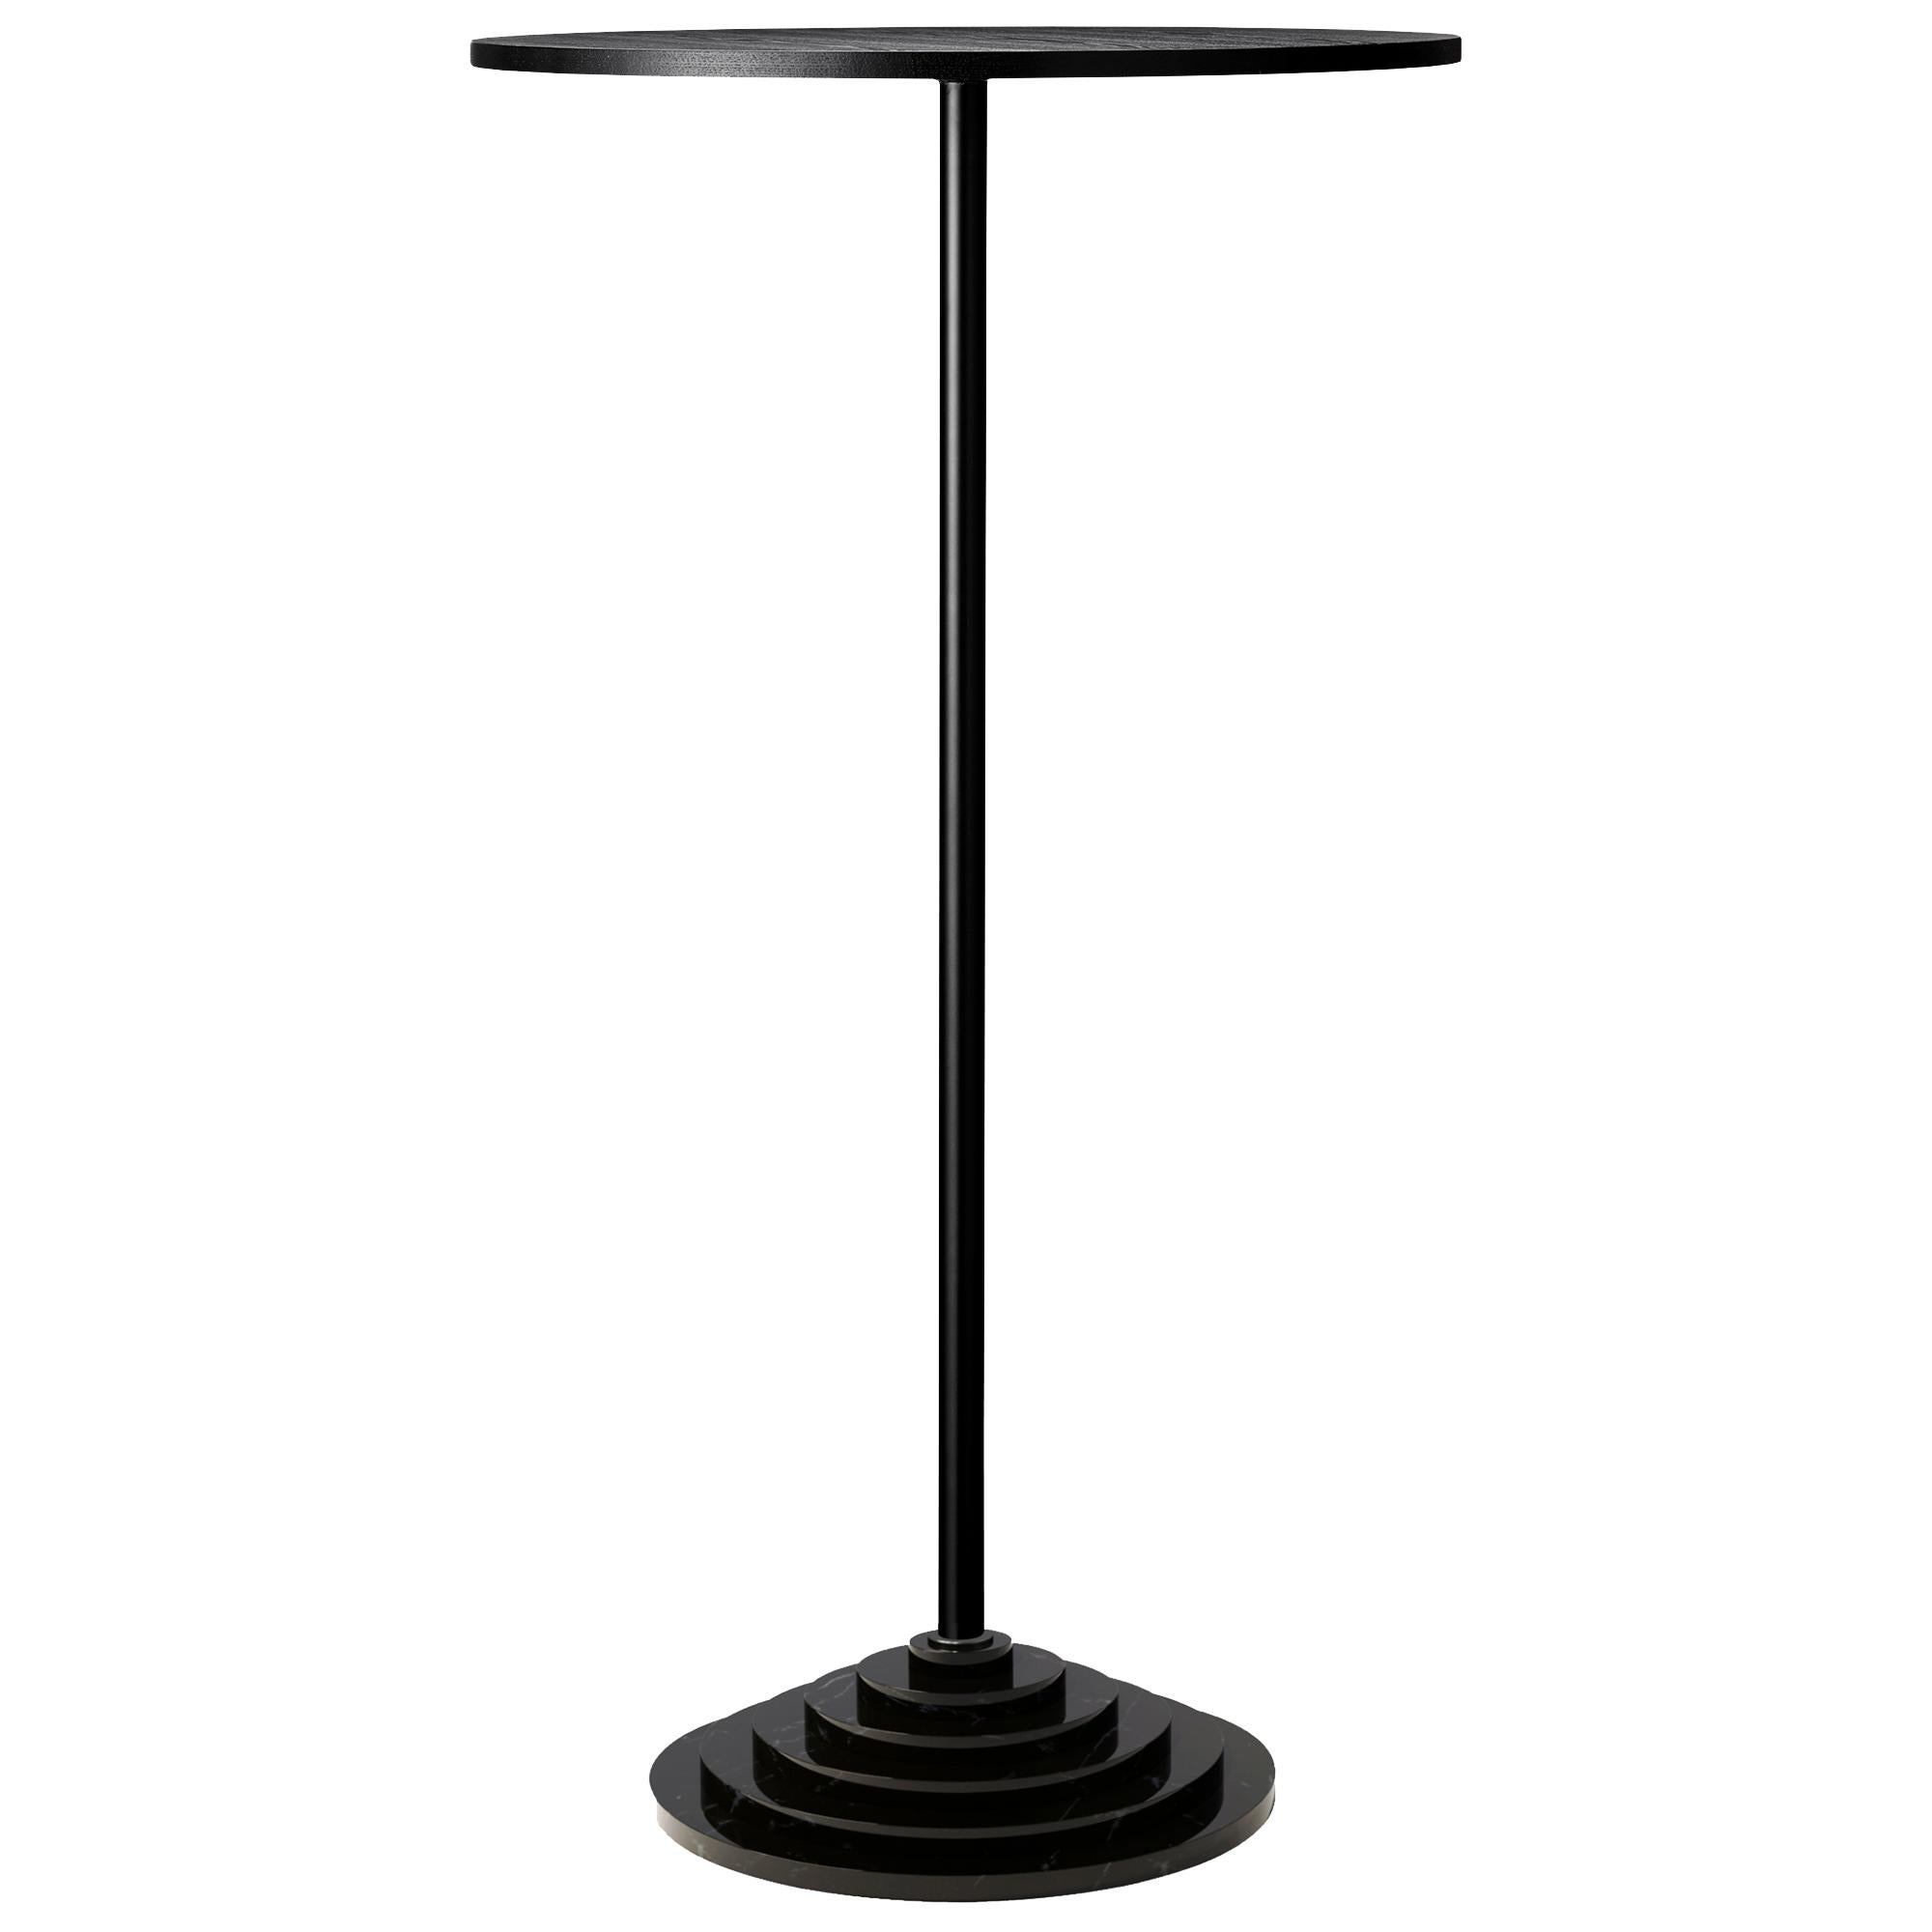 Base en marbre noir et table haute en acier
Dimensions : Ø 60 x H 110 CM
MATERIAL : Cadre en acier, base en marbre, placage

Table élégante avec une lourde base en marbre qui crée un look unique.